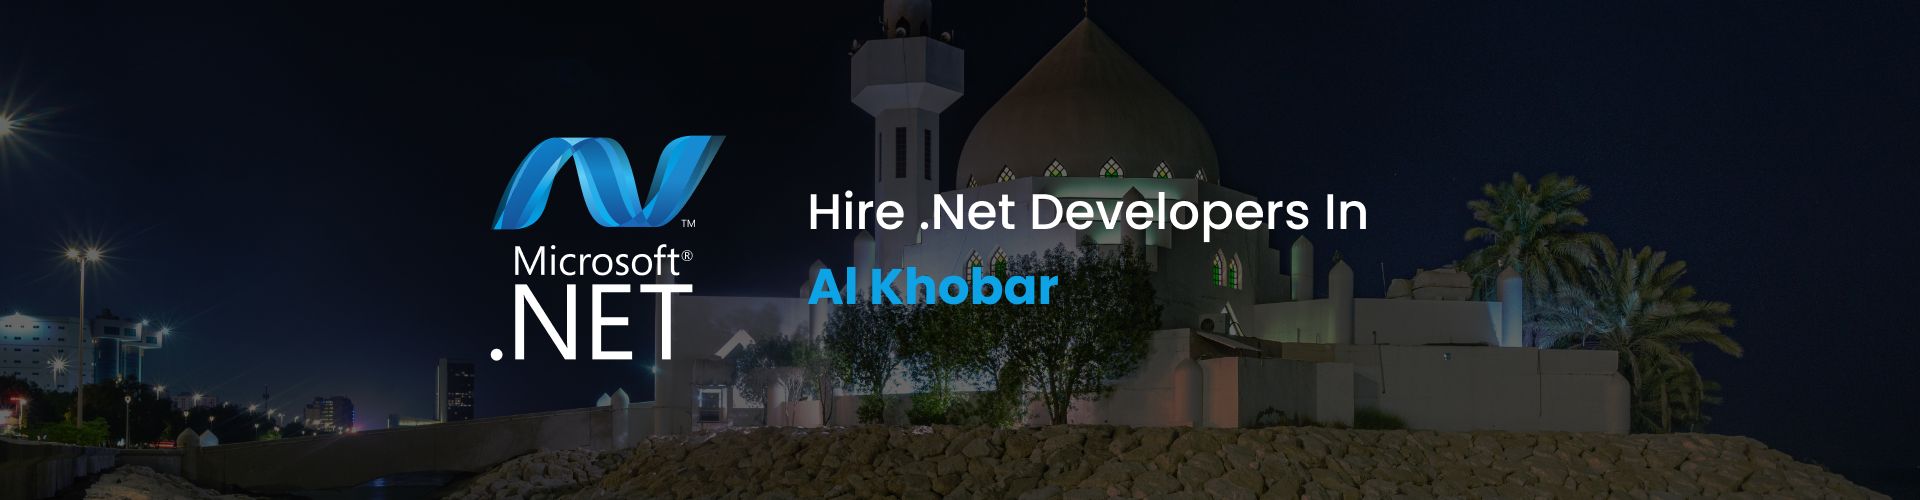 hire .net developers in al khobar